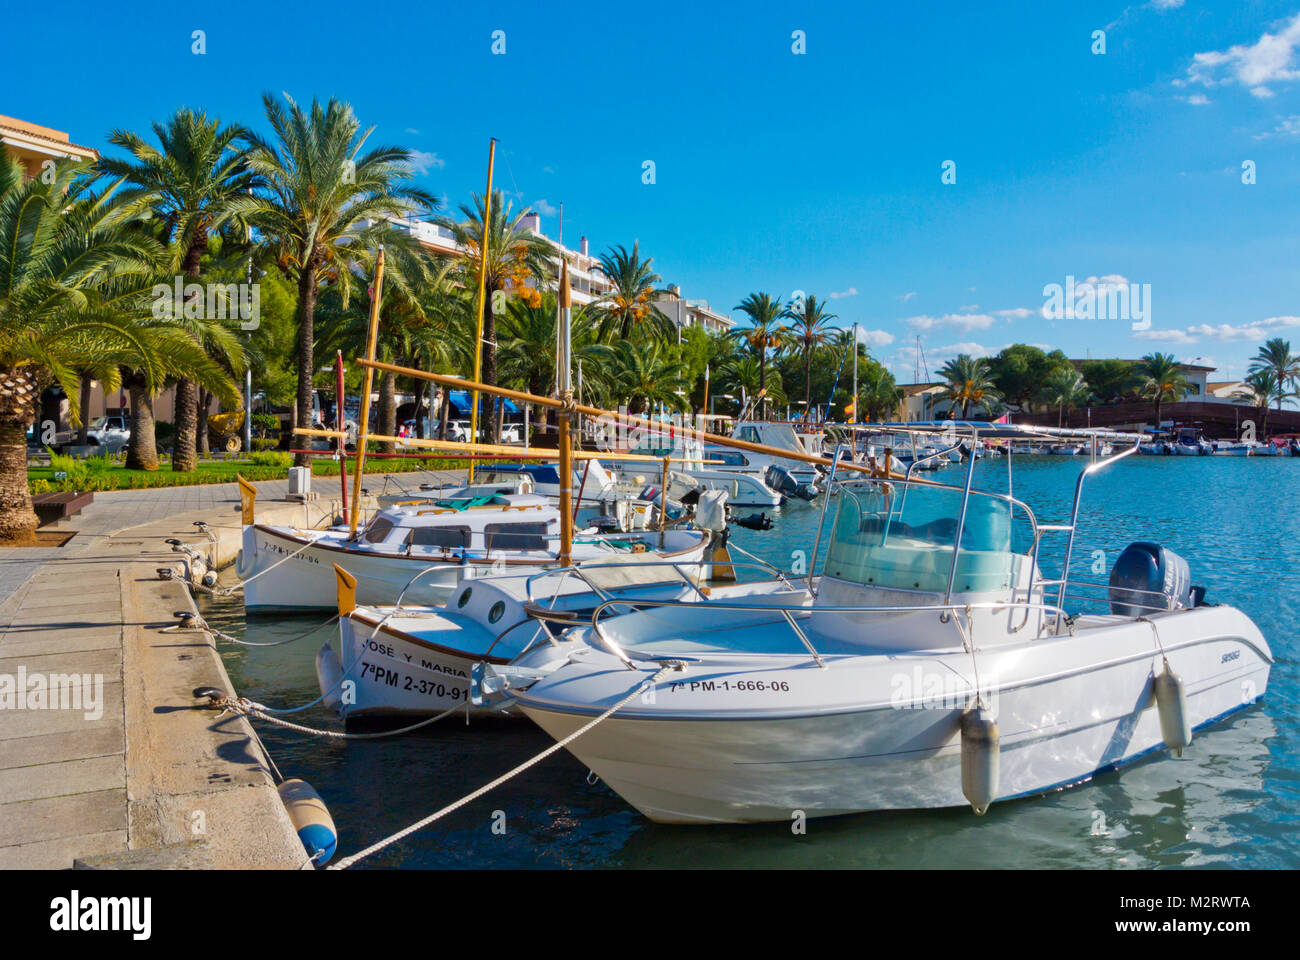 Port pour bateaux privés, PASSEIG MARITIM, Paseo Maritimo, la promenade du port, Port d'Alcudia, Majorque, Iles Baléares, Espagne Banque D'Images